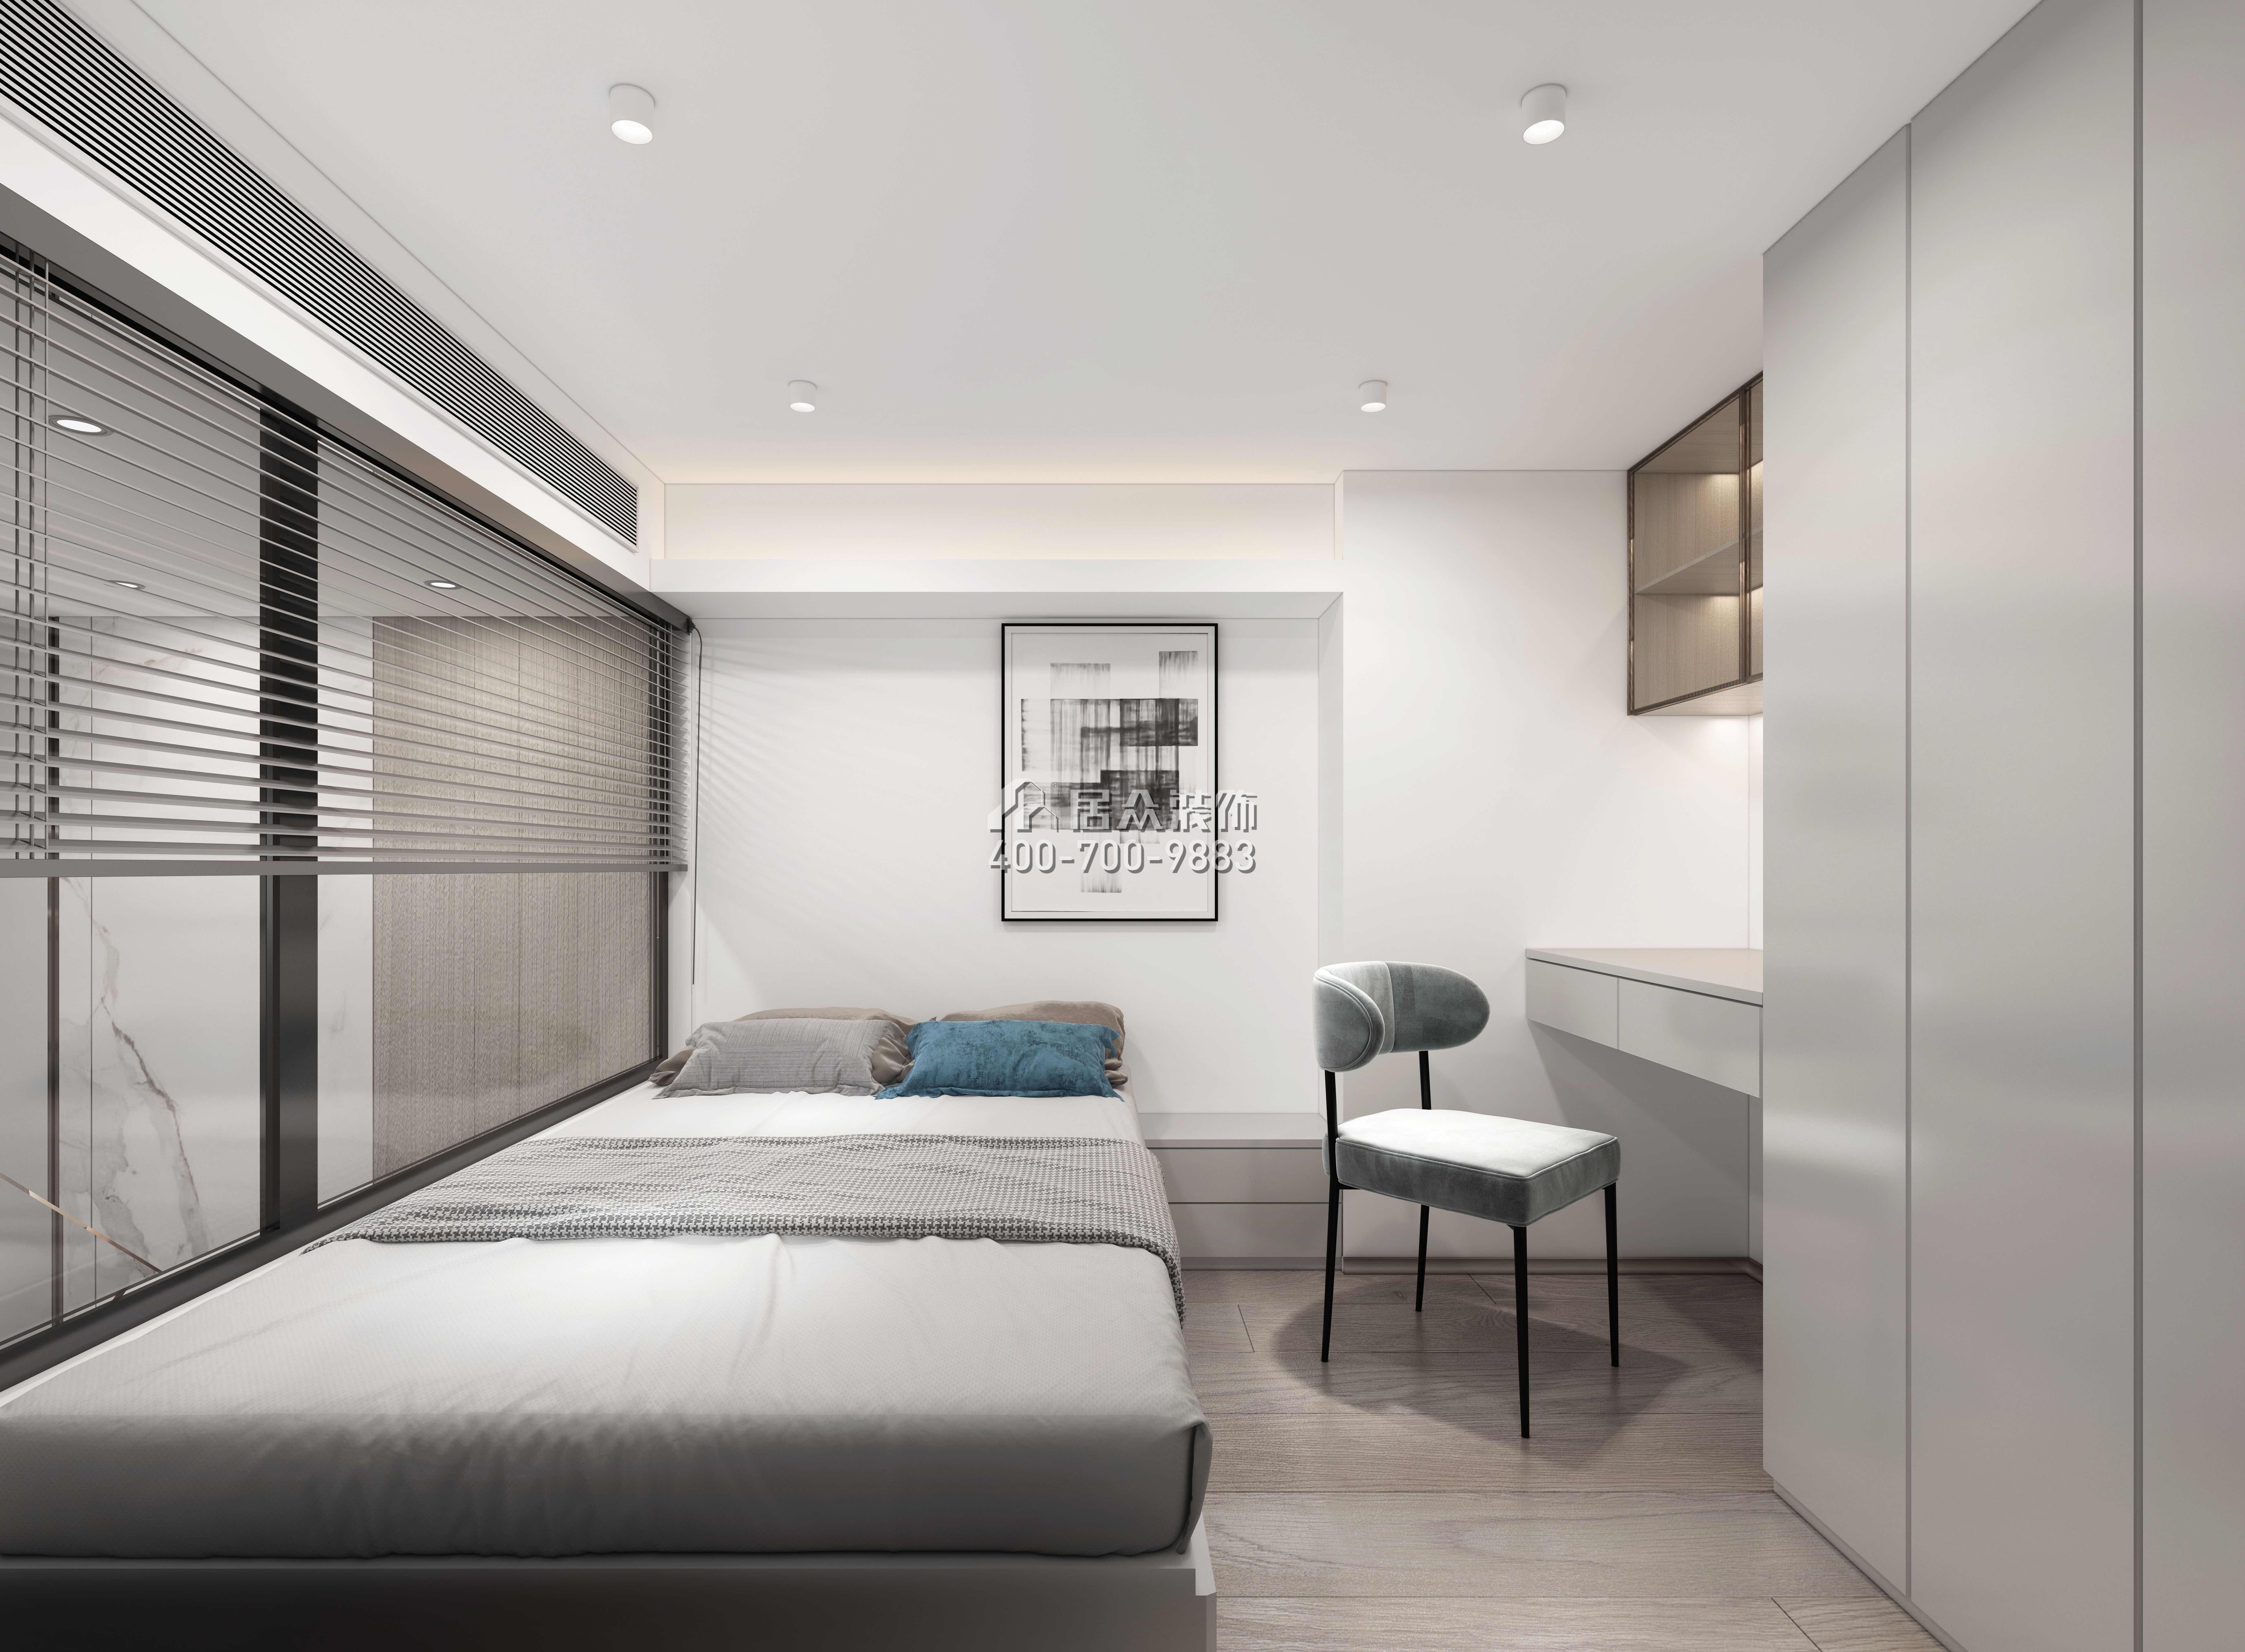 万科臻湾汇110平方米现代简约风格复式户型卧室装修效果图